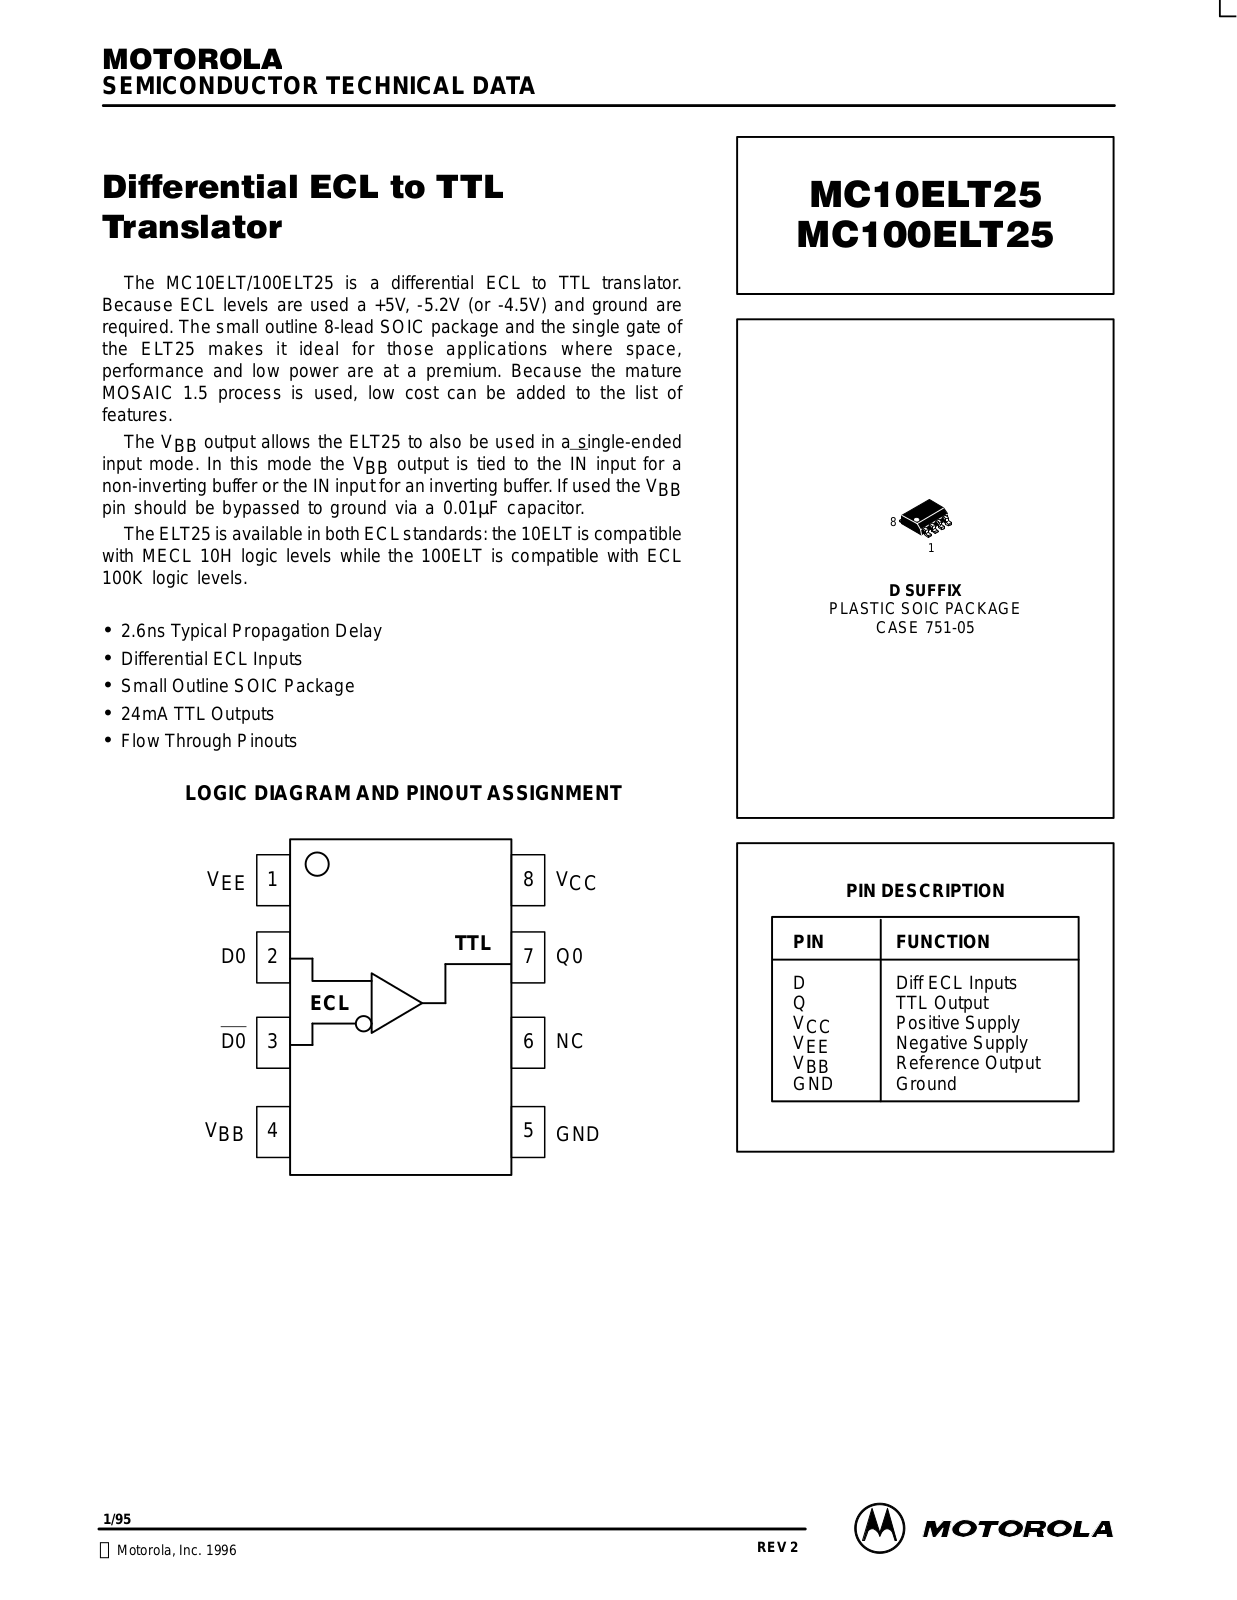 Motorola MC10ELT25D, MC100ELT25D Datasheet